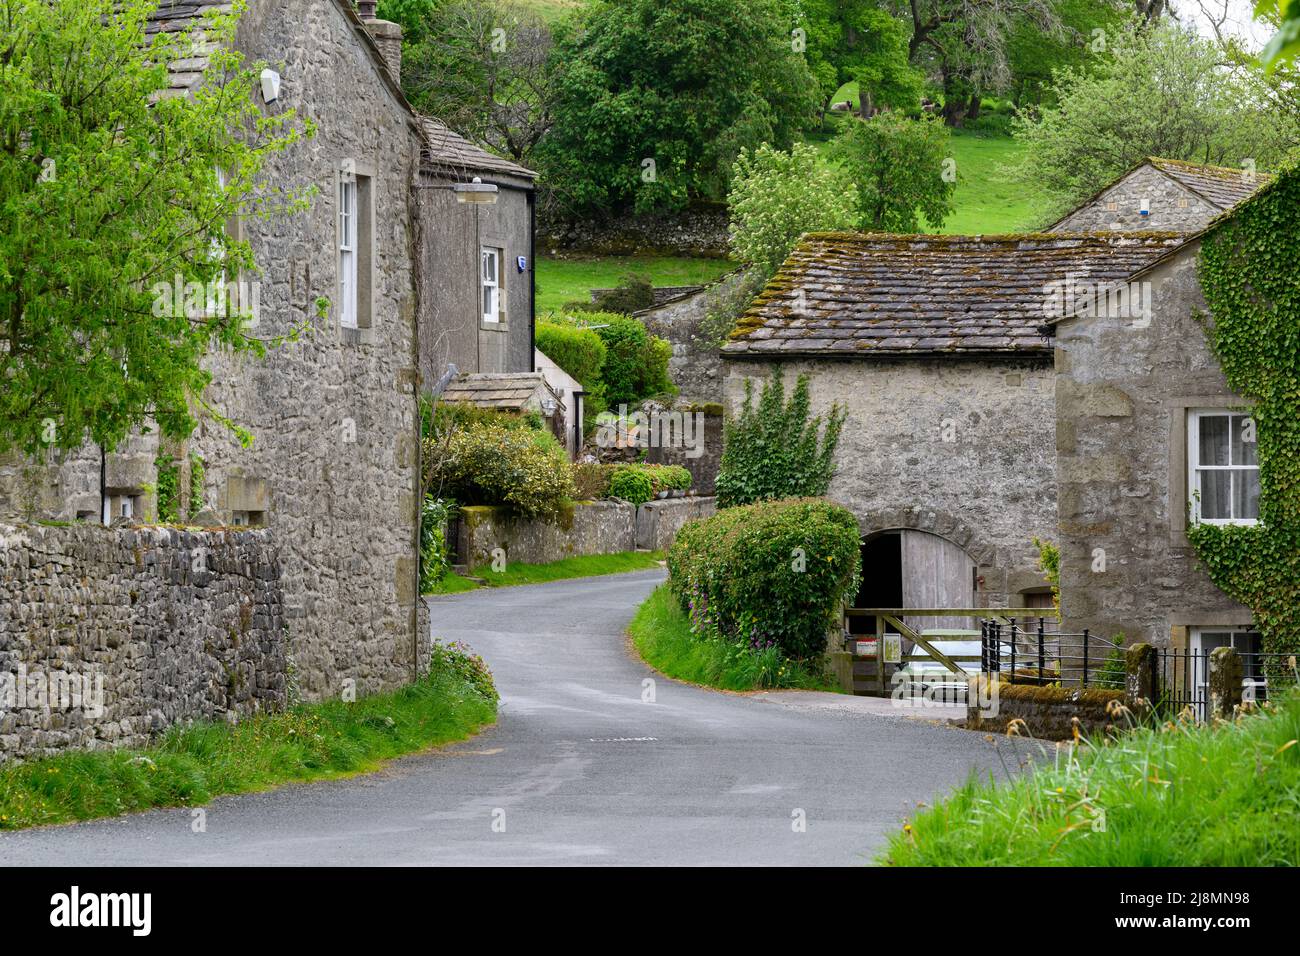 Ruhiges Conistone Dorf (attraktive Steingebäude, grüne Felder auf steilen Talhängen, kurvenreiche Straße) - Wharfedale, Yorkshire Dales, England, Großbritannien. Stockfoto